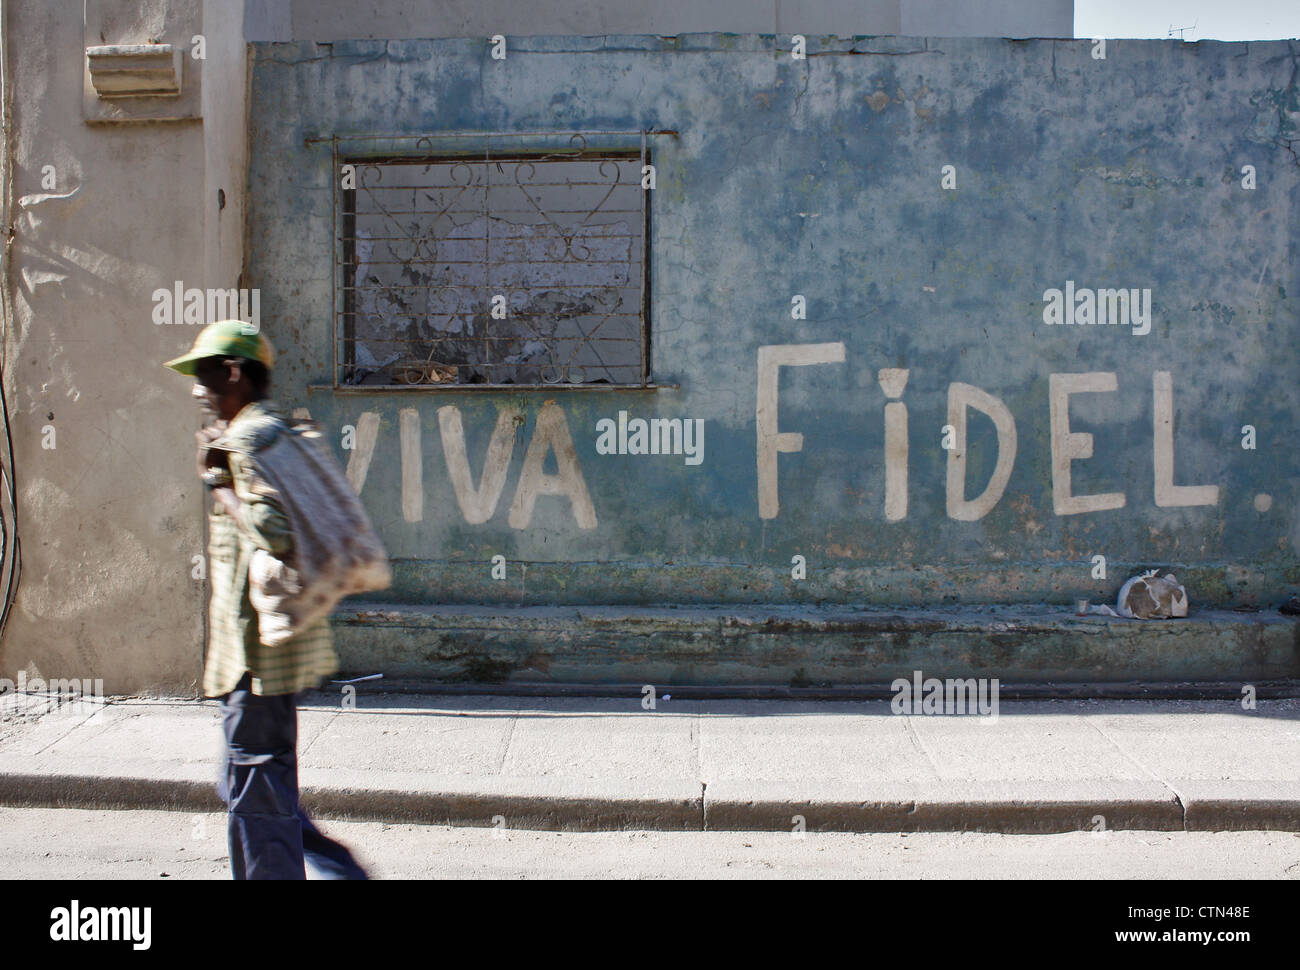 Viva Fidel geschrieben an der Wand in der Innenstadt von Havanna, Kuba Stockfoto